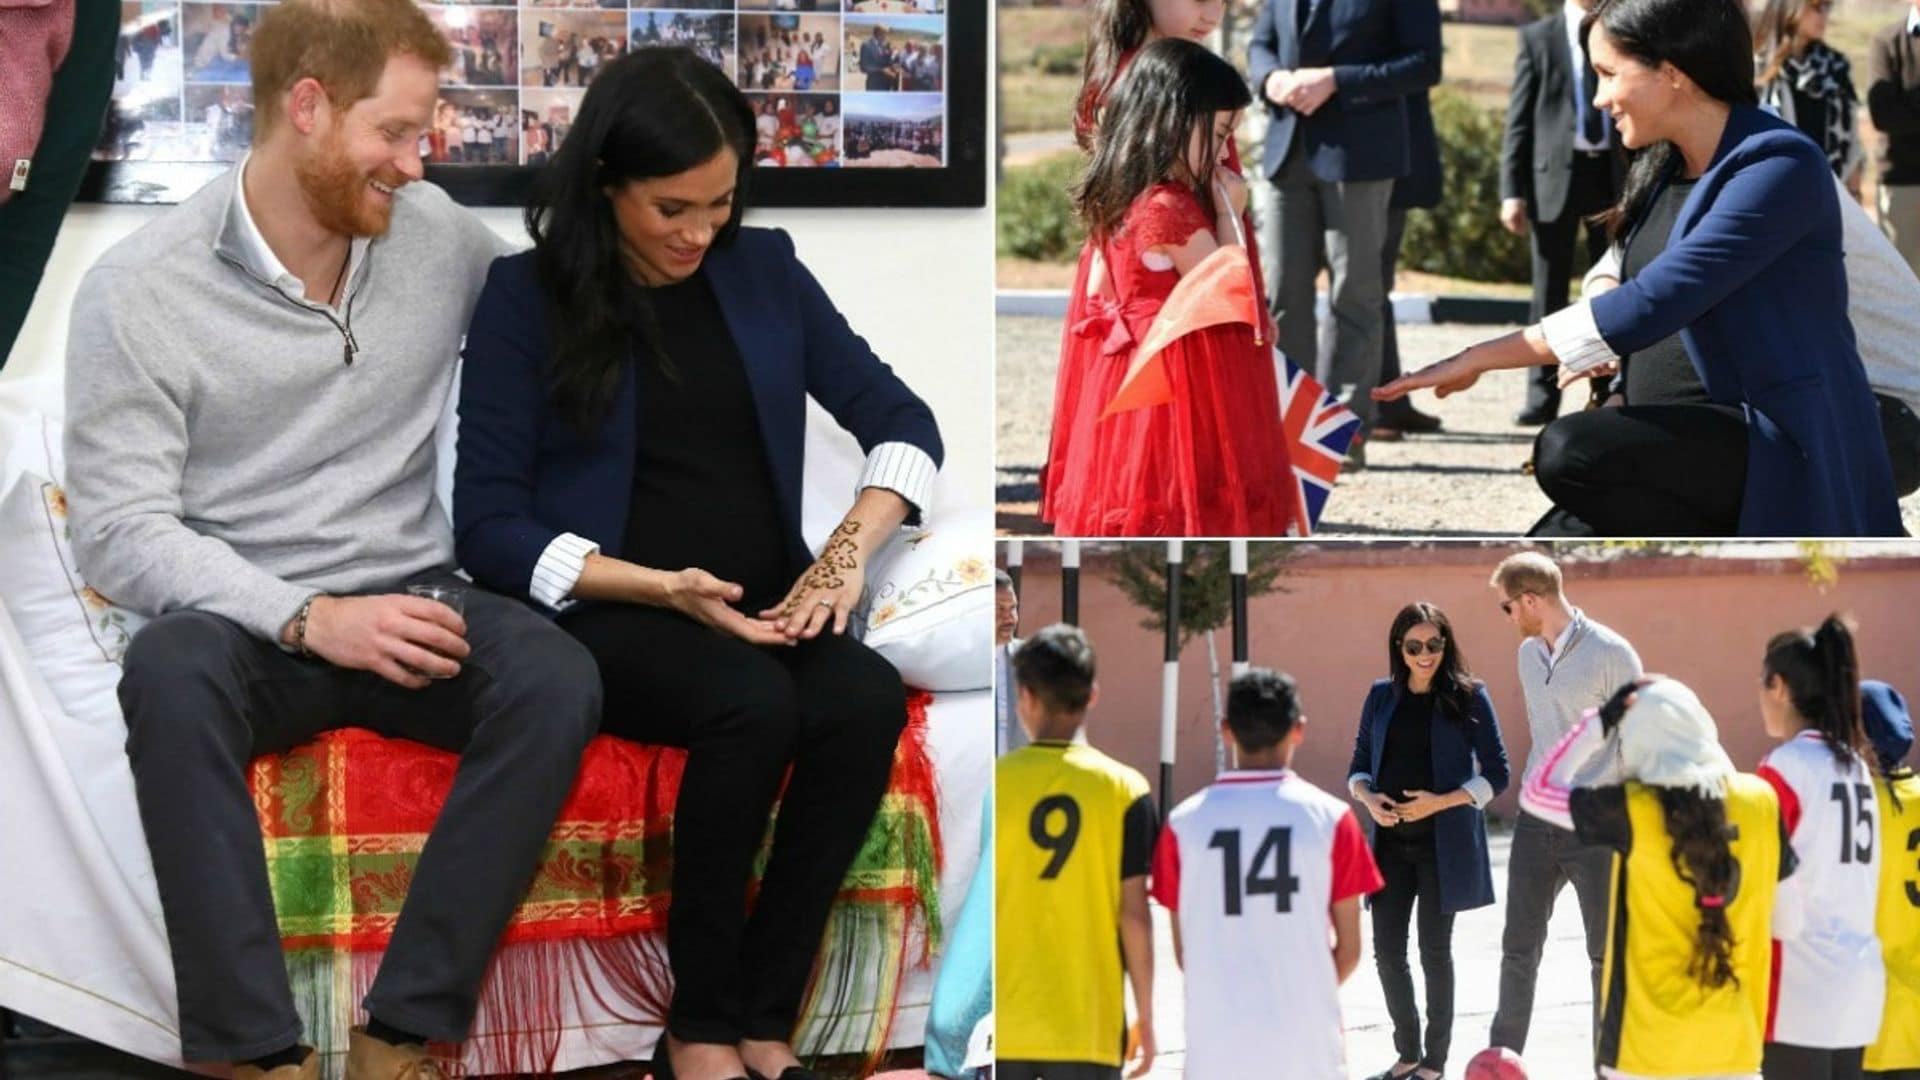 Meghan Markle and Prince Harry Morocco royal tour photos